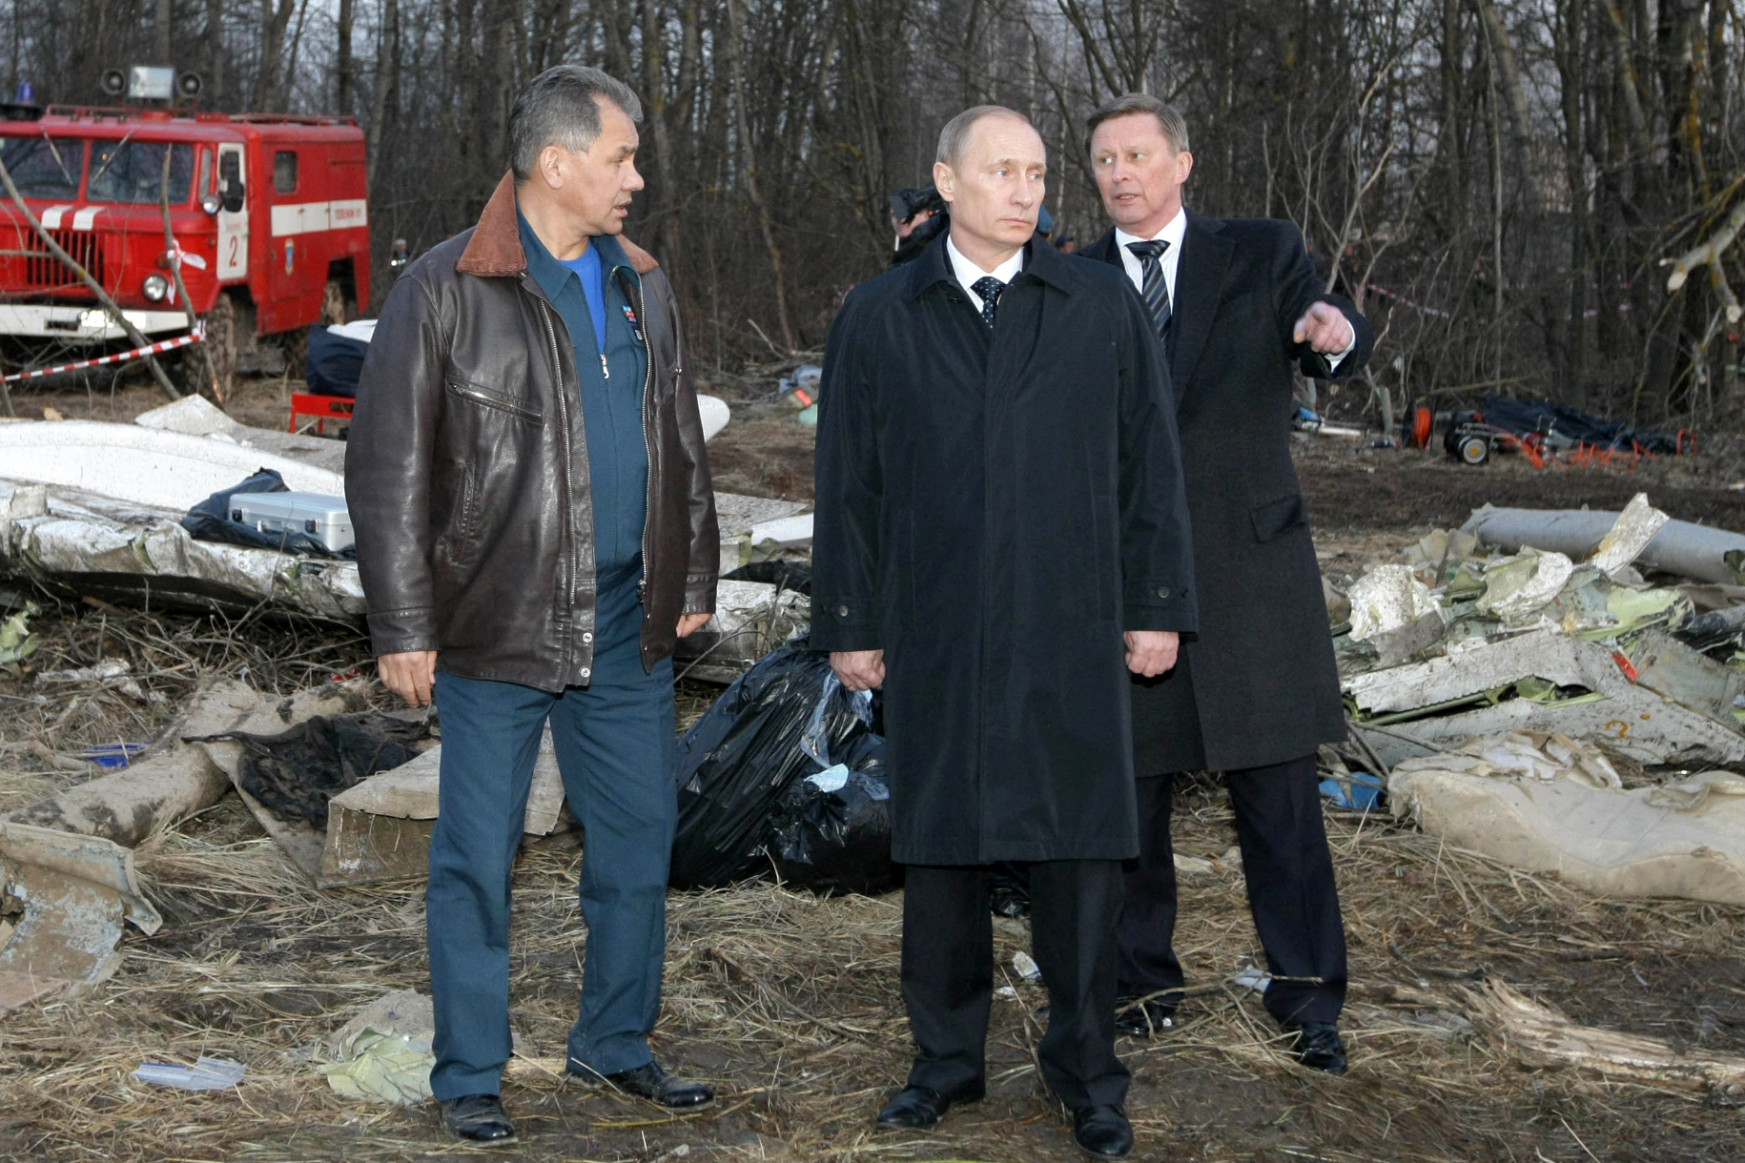 Kaczyńskiék mindig is Putyin és Tusk összjátékának tartották a 2010-es szmolenszki légi szerencsétlenséget